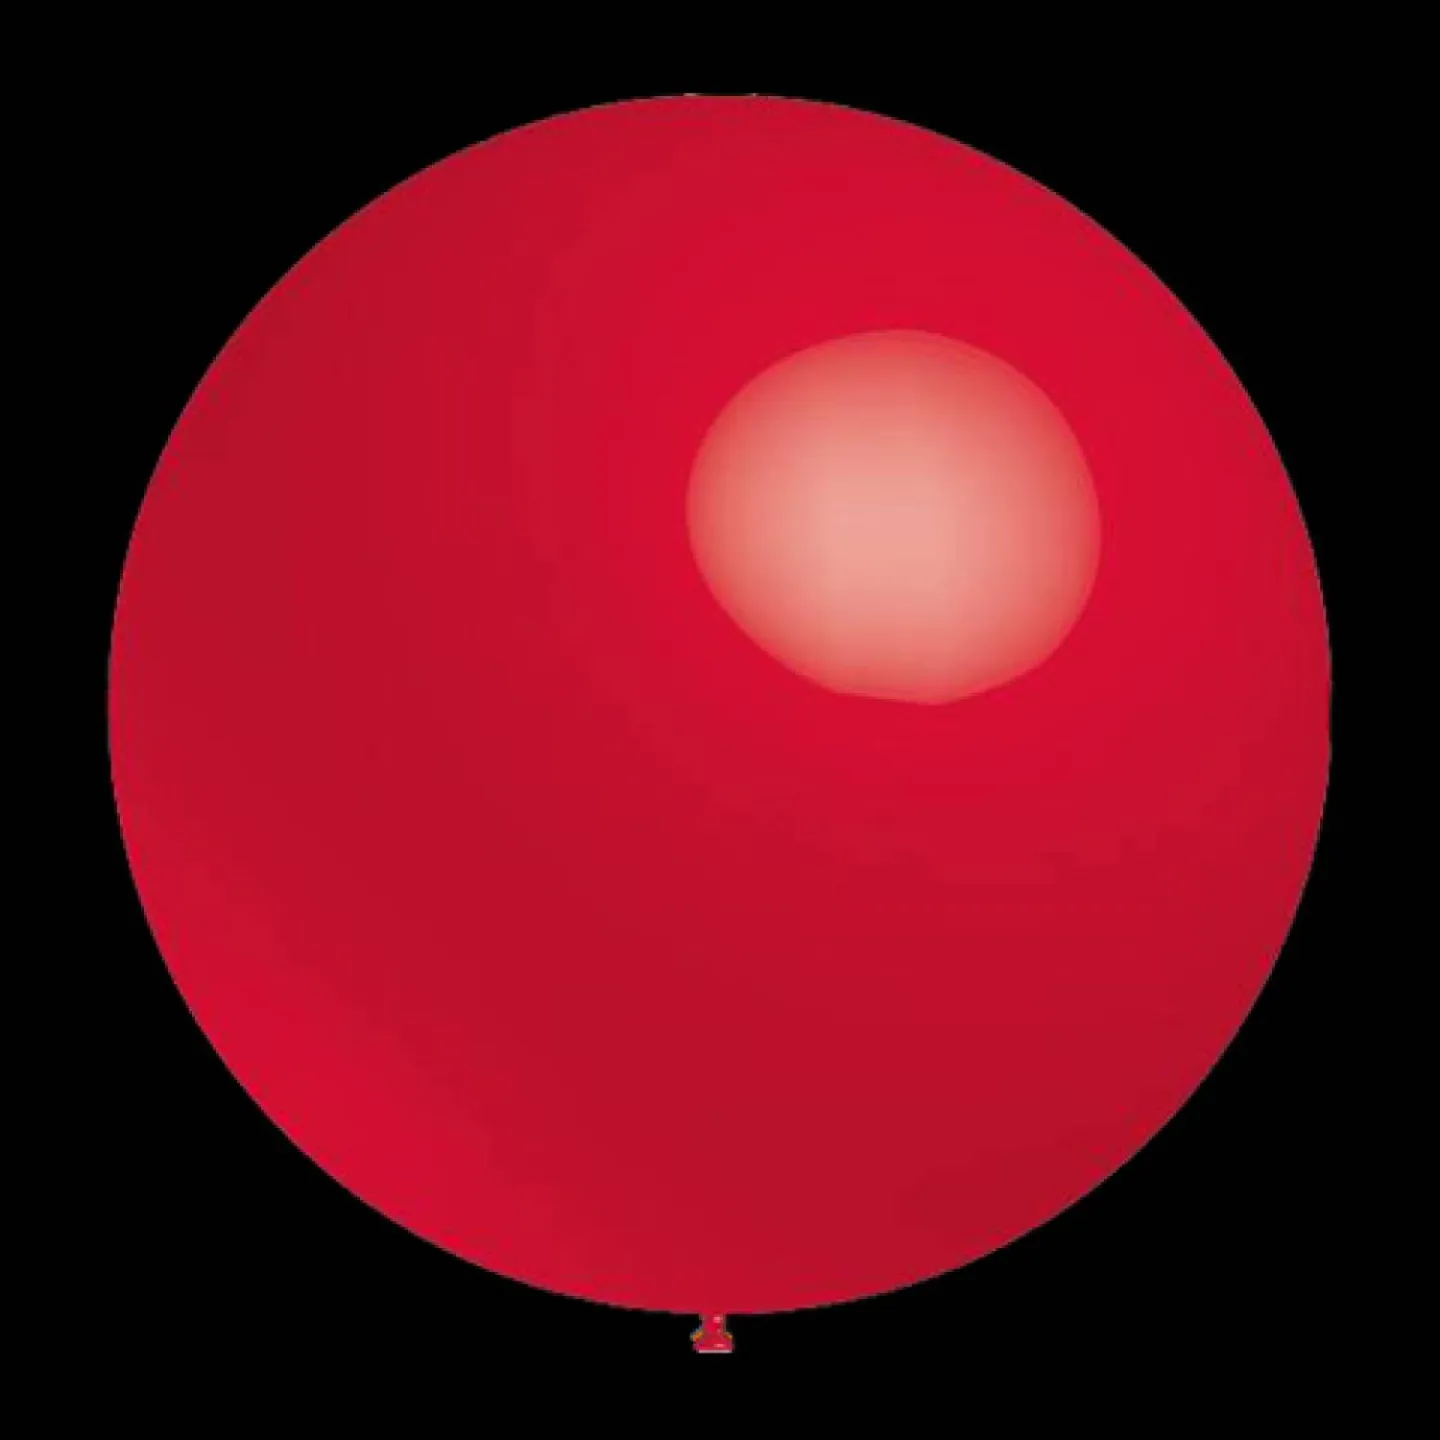 Rode ballonnen metallic rond 28cm.